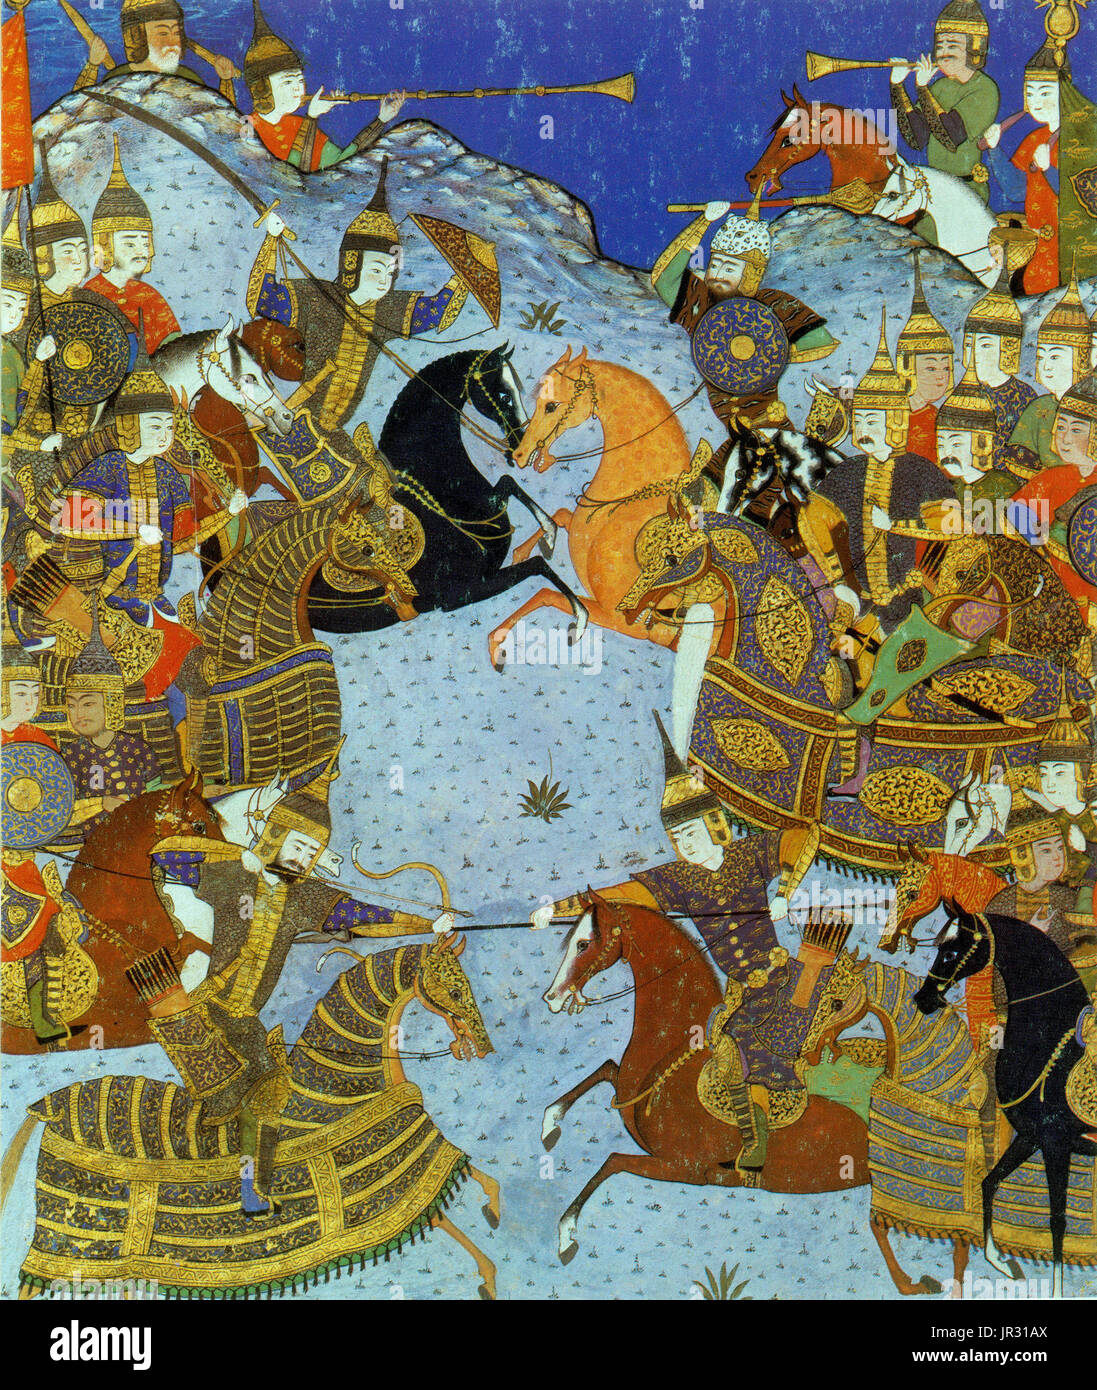 Shahnameh, auch transkribiert als weltweit (das Buch der Könige), ist eine lange Epos des persischen Dichters Ferdowsi von 977 bis 1010 n. geschrieben und das Nationalepos der grössere Iran. Bestehend aus einigen 50.000 Couplets, ist das Schāhnāme die weltweit längste Epos geschrieben von einem einzigen Dichter. Es erzählt vor allem die mythischen und in gewissem Maße die historische Vergangenheit des persischen Reiches von der Erschaffung der Welt bis zur islamischen Eroberung von Persien im 7. Jahrhundert. Modernen Iran, Aserbaidschan, Afghanistan und der Großregion, beeinflusst durch die persische Kultur (z. B. Georgien, Armenien, T Stockfoto